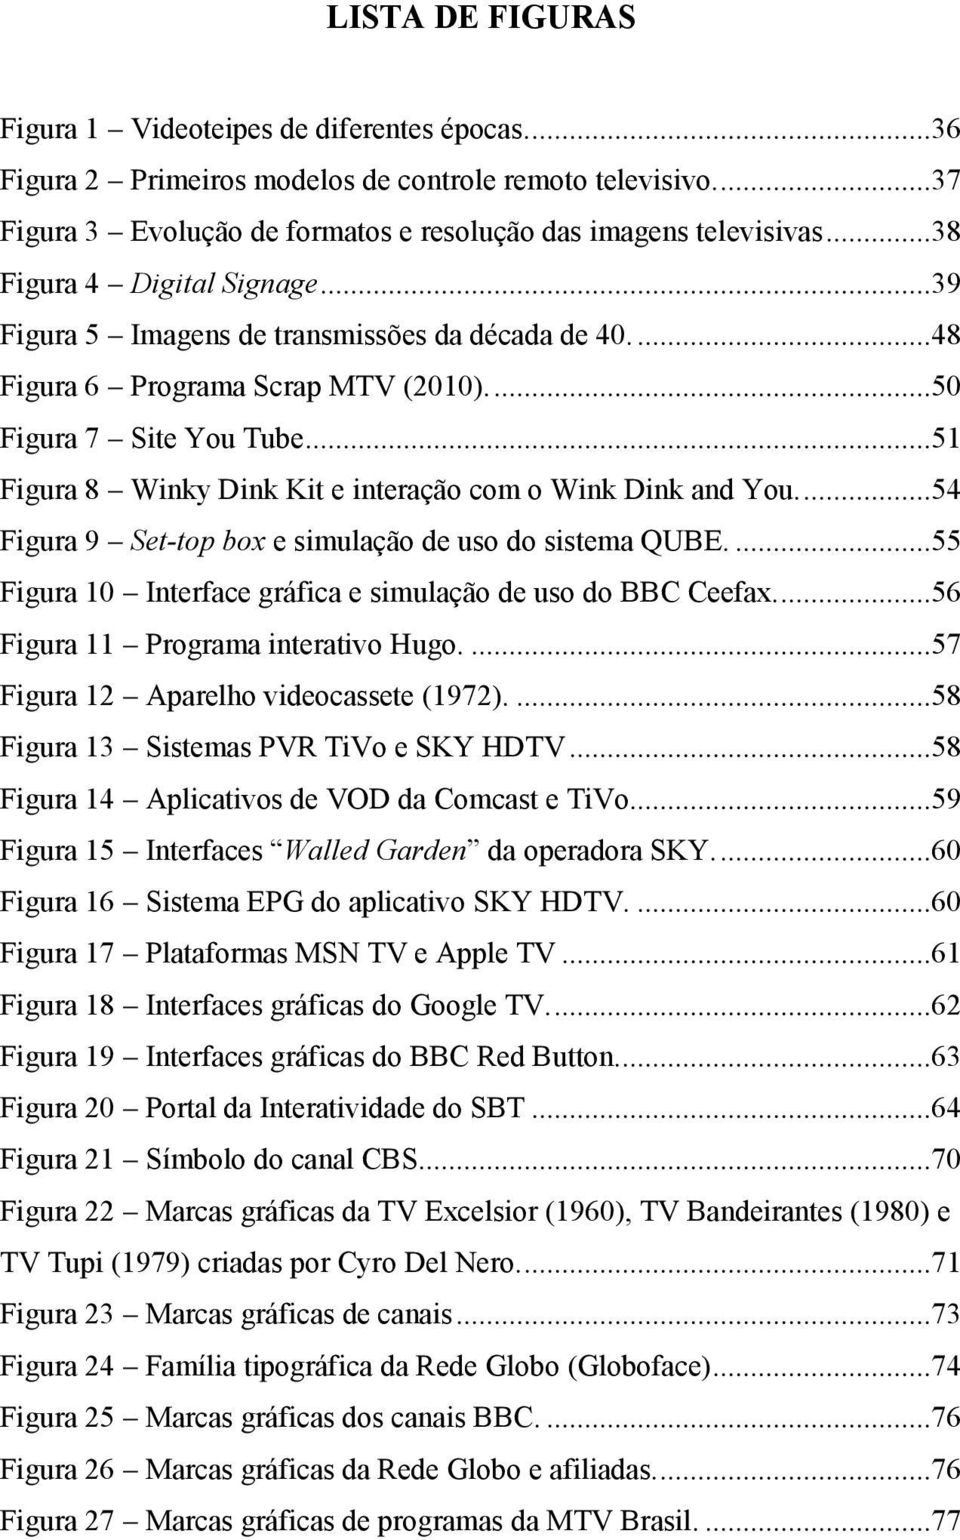 ..51 Figura 8 Winky Dink Kit e interação com o Wink Dink and You....54 Figura 9 Set-top box e simulação de uso do sistema QUBE....55 Figura 10 Interface gráfica e simulação de uso do BBC Ceefax.